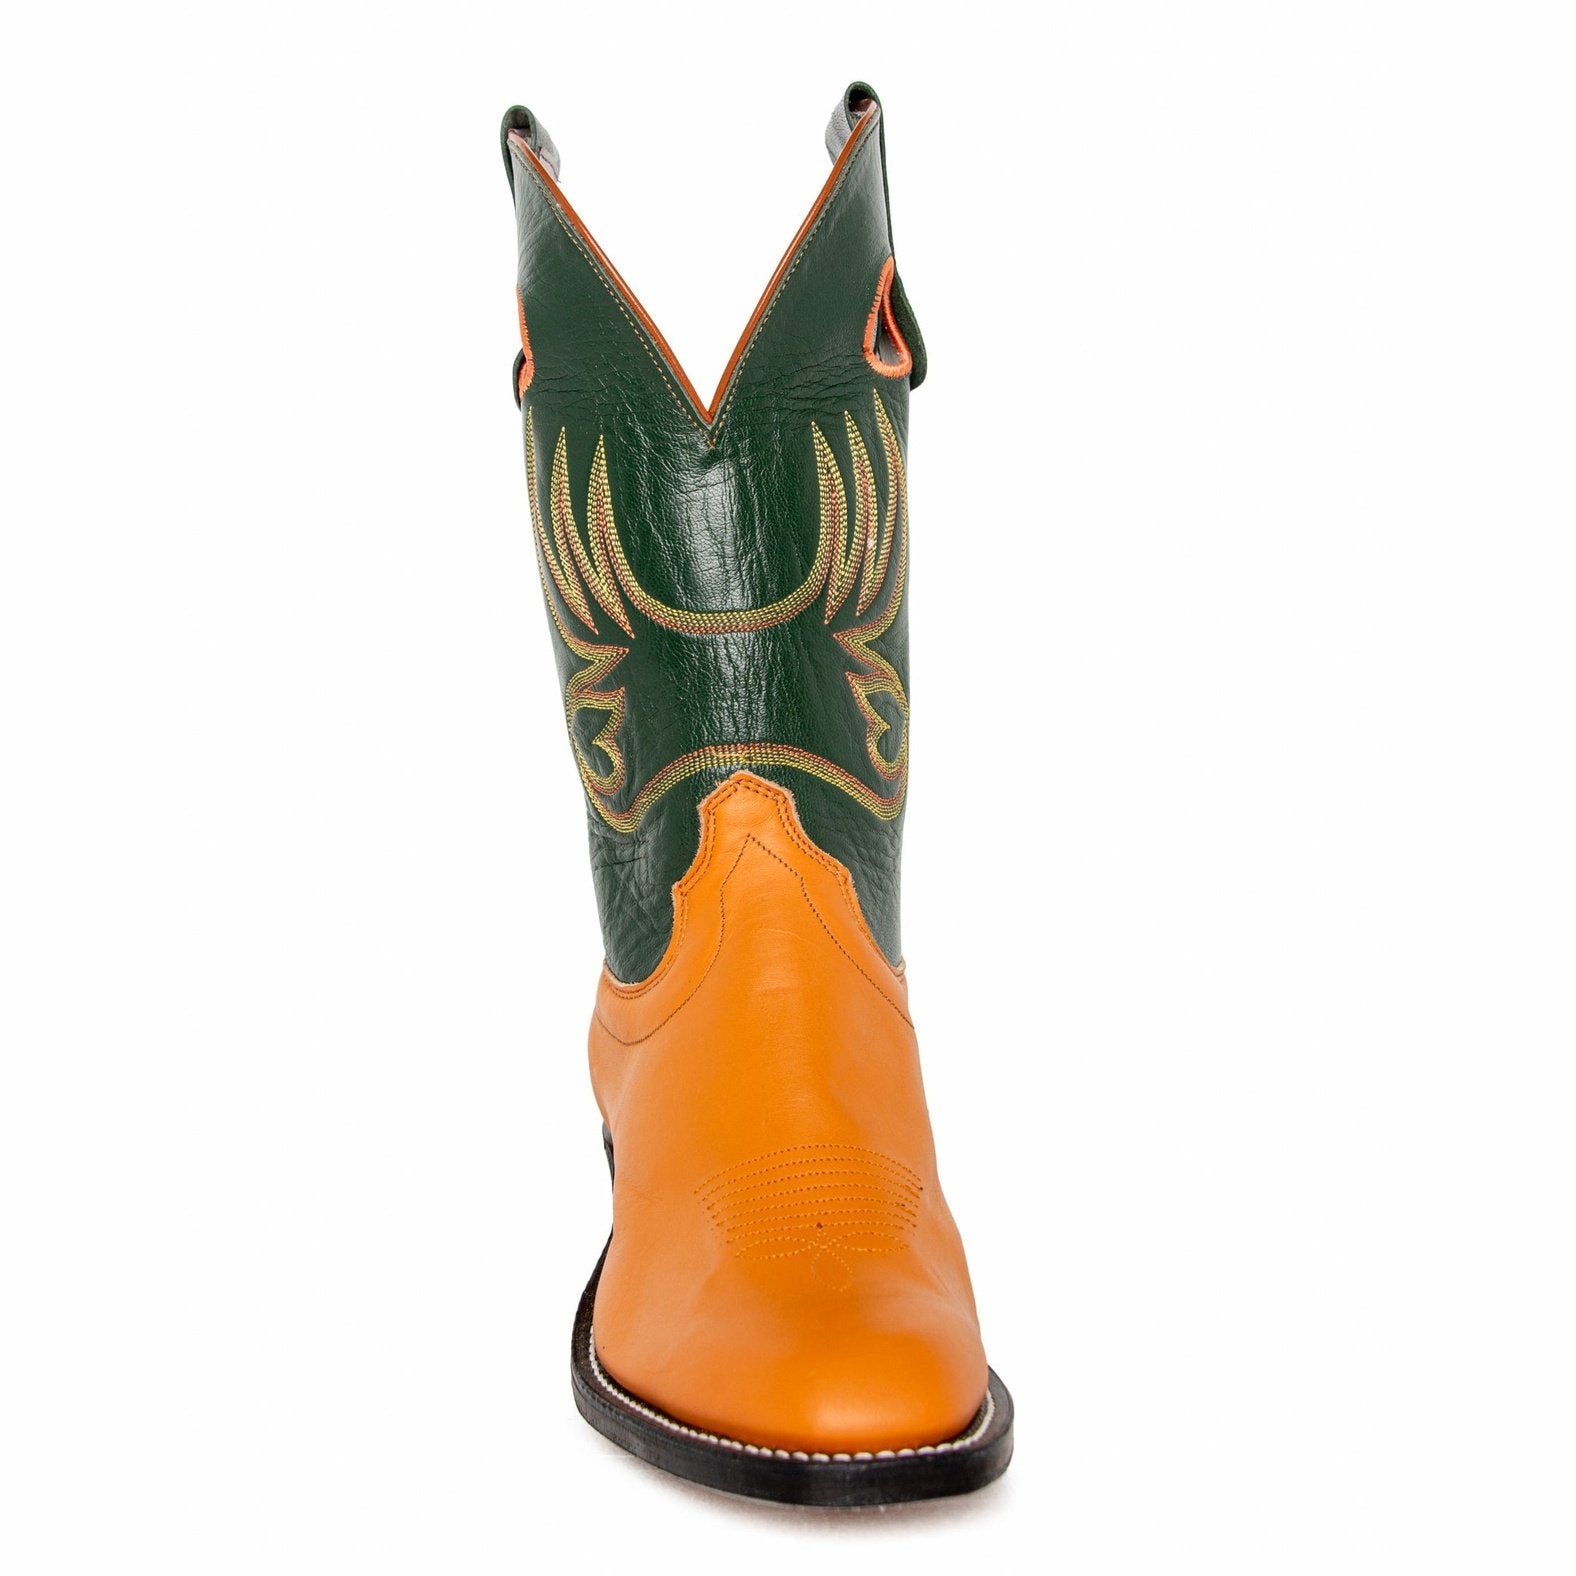 Olathe Men's Cowboy Boots 11" Rough Stock Riding Heel Tan/ Dark Green 6907